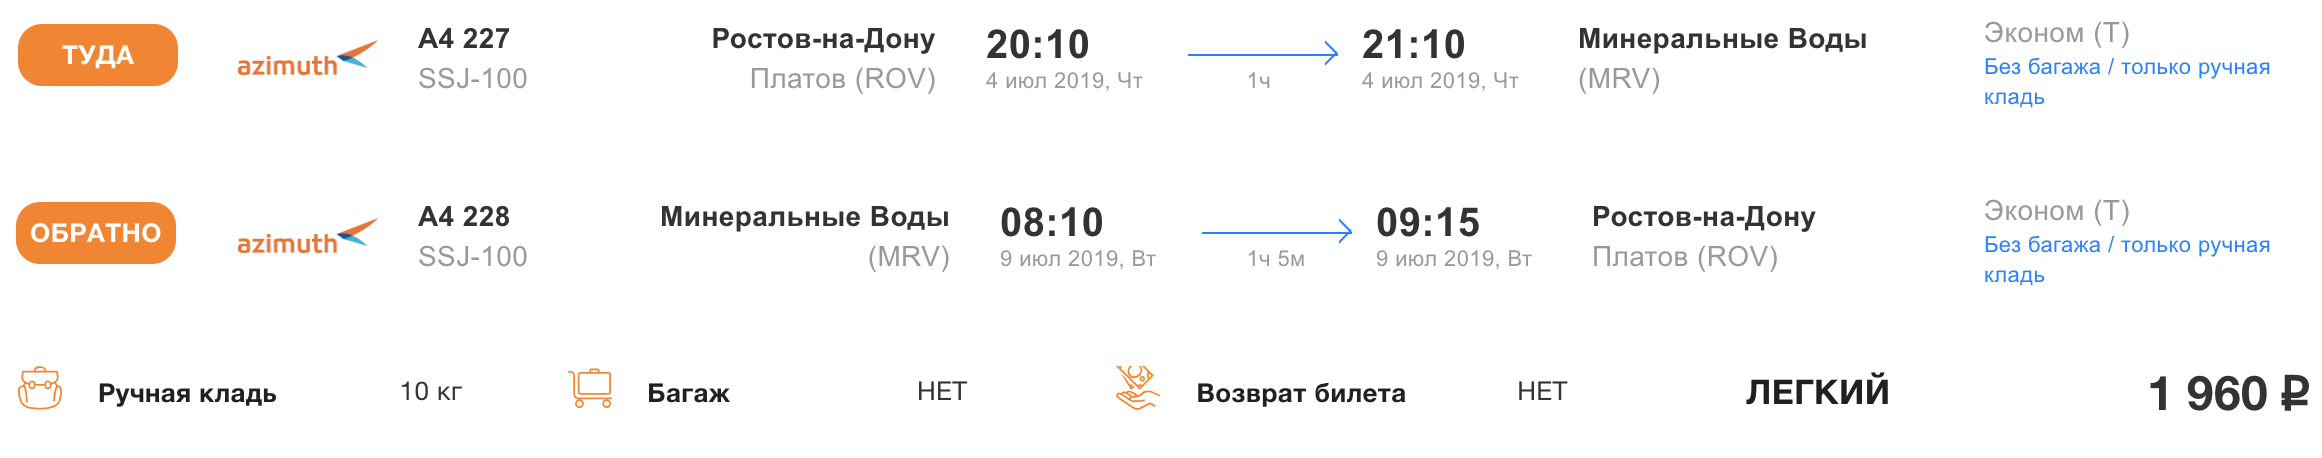 самолет ярославль челябинск расписание цена билета